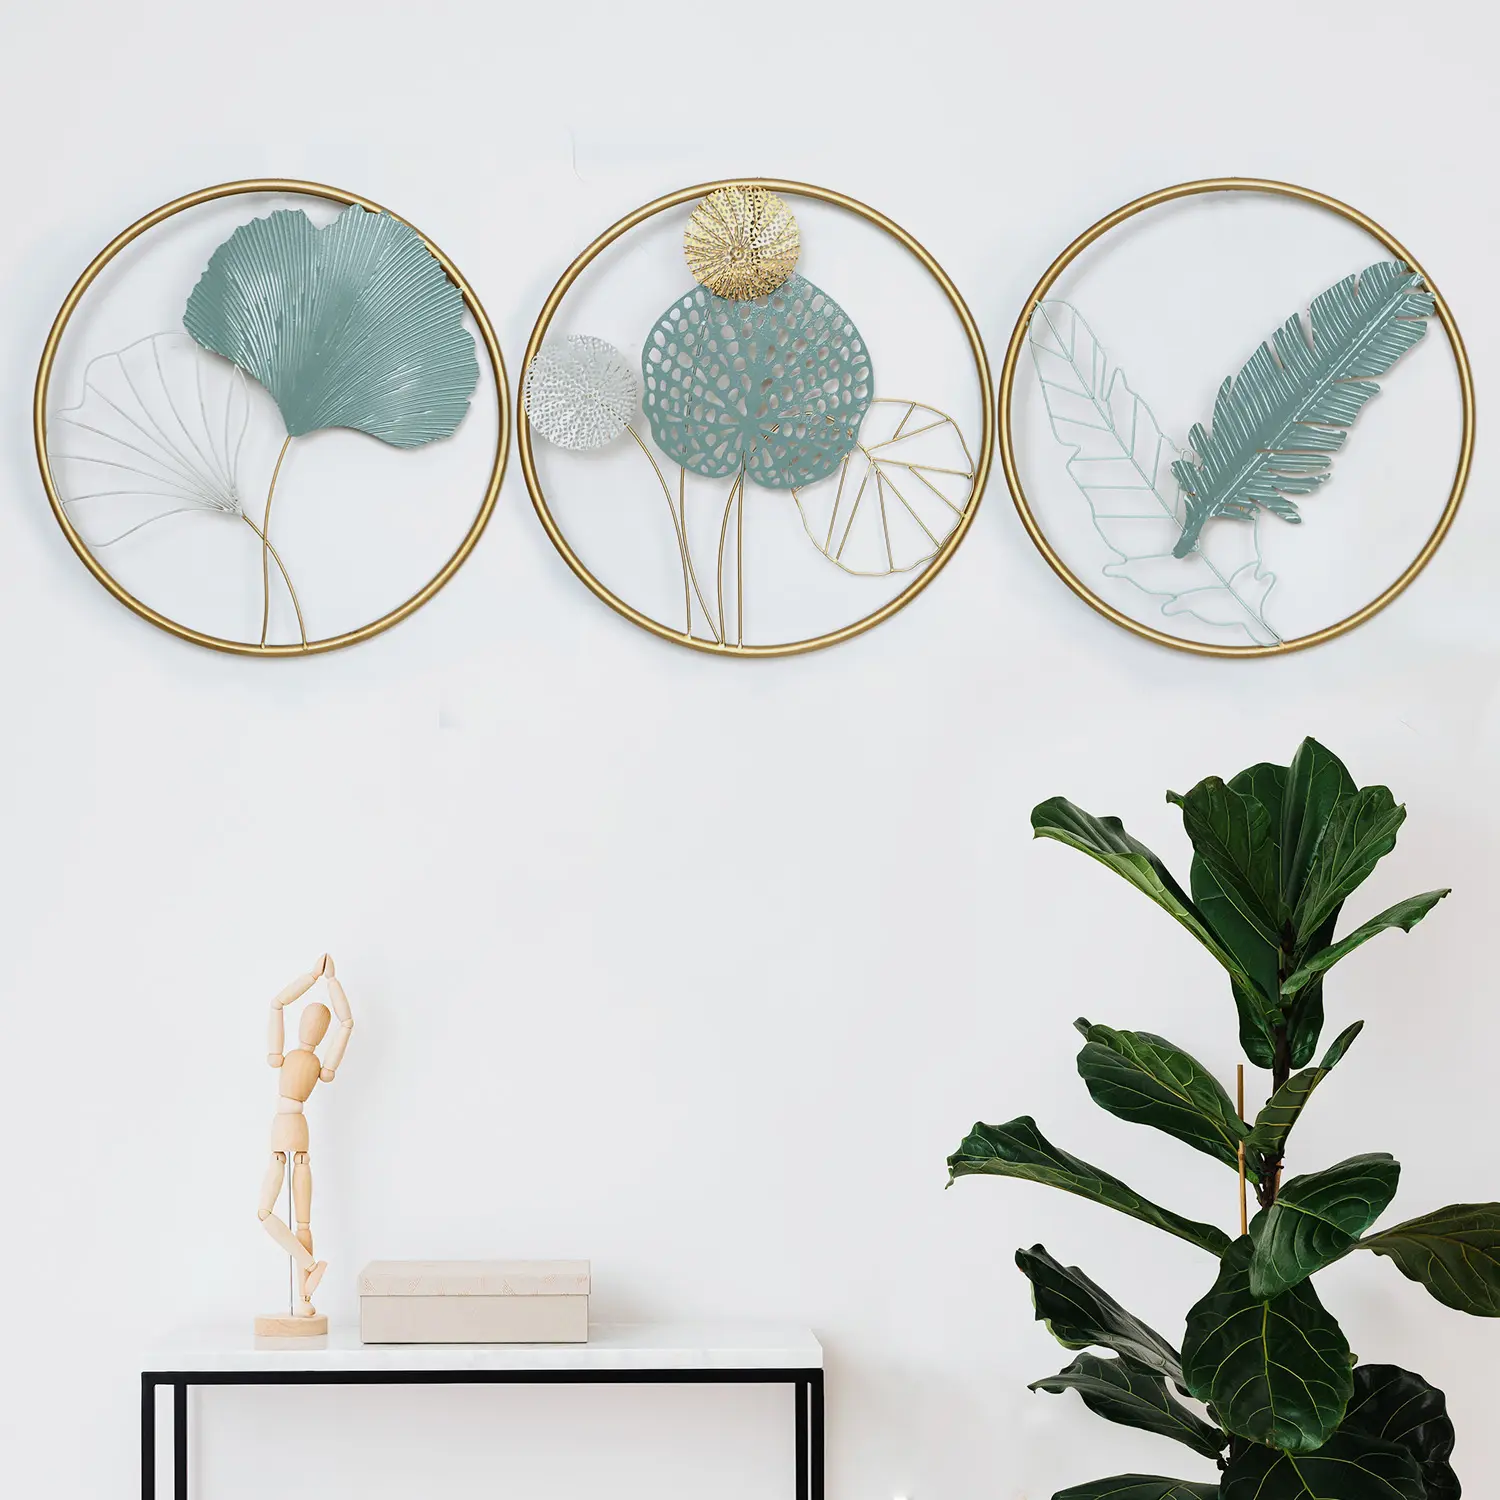 Neue Produkte Innendekoration Zubehör Moderne Luxus 3D Kunst dekorative Akzente Metallic Wand dekore Home Asses ories